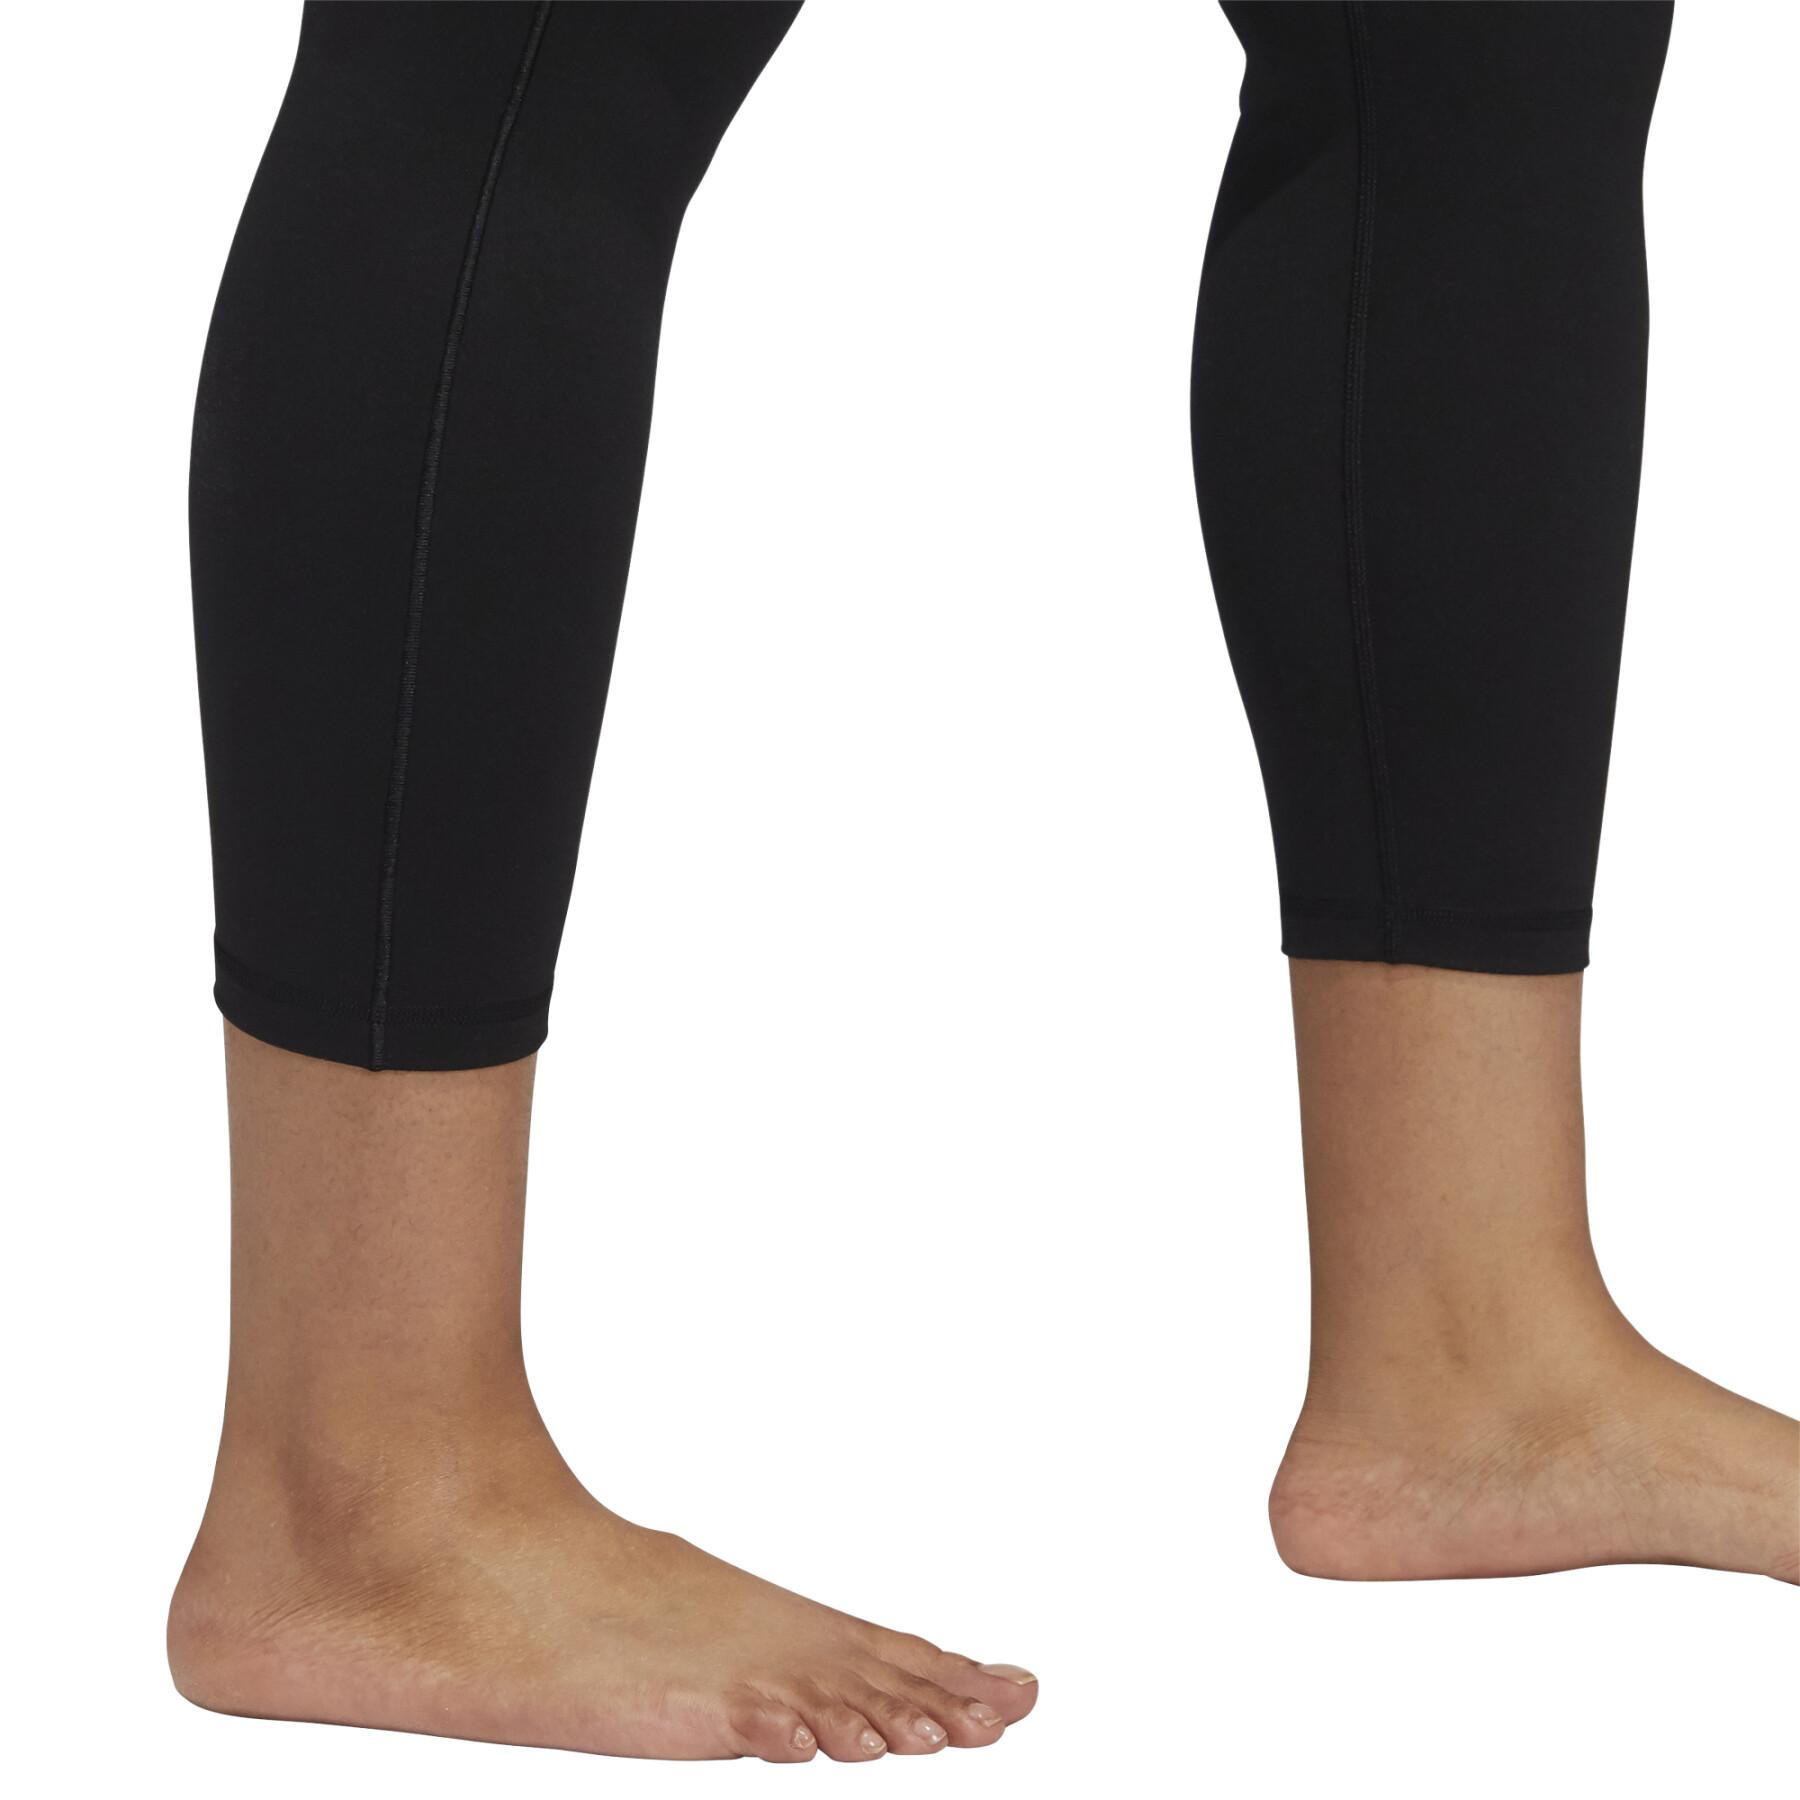 Leggings für Frauen adidas Yoga Studio 7/8 (Plus Size)